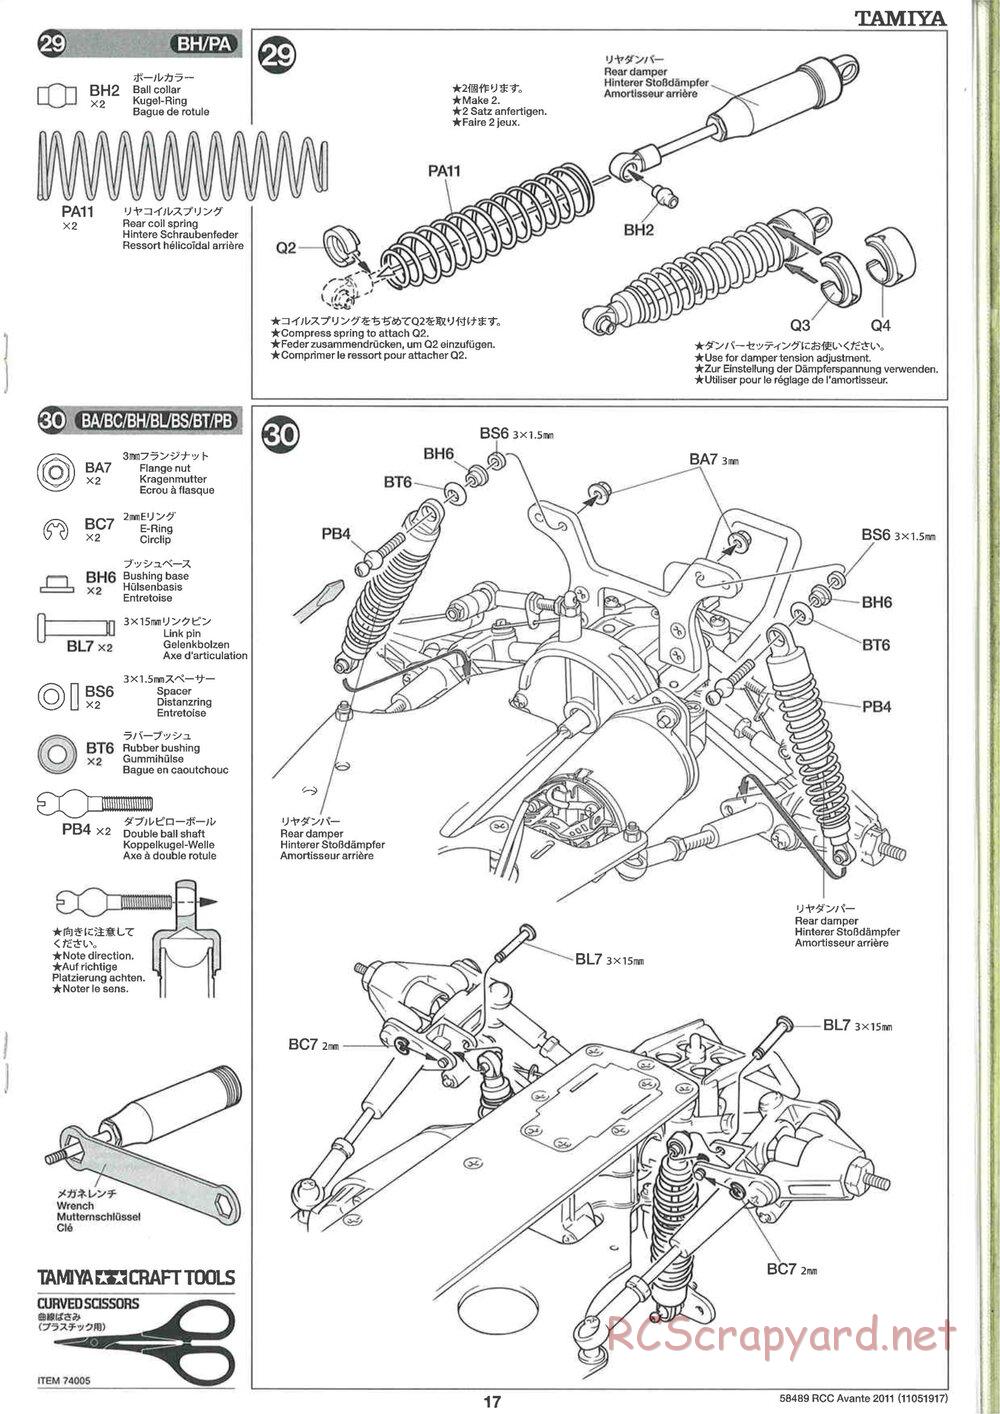 Tamiya - Avante 2011 - AV Chassis - Manual - Page 17